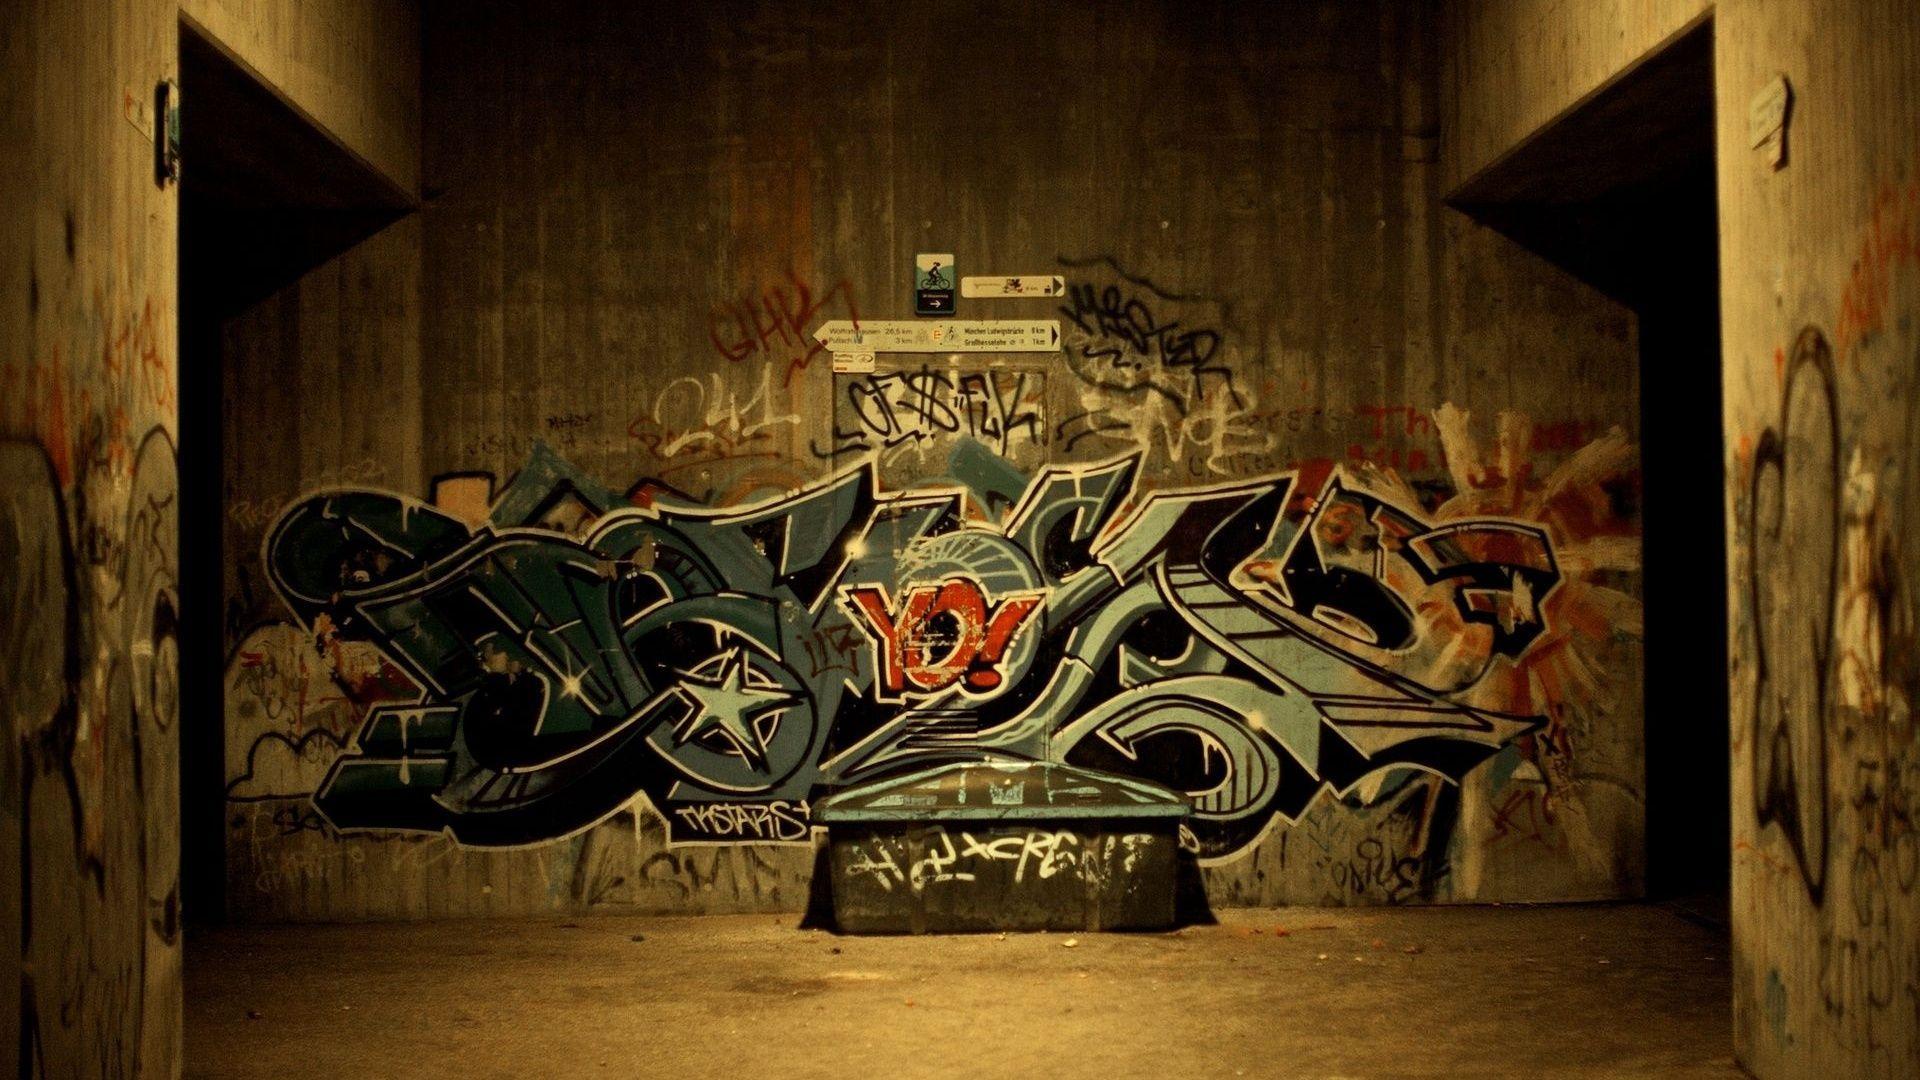 rap, hip hop, graffiti, street art, graffiti hip hop